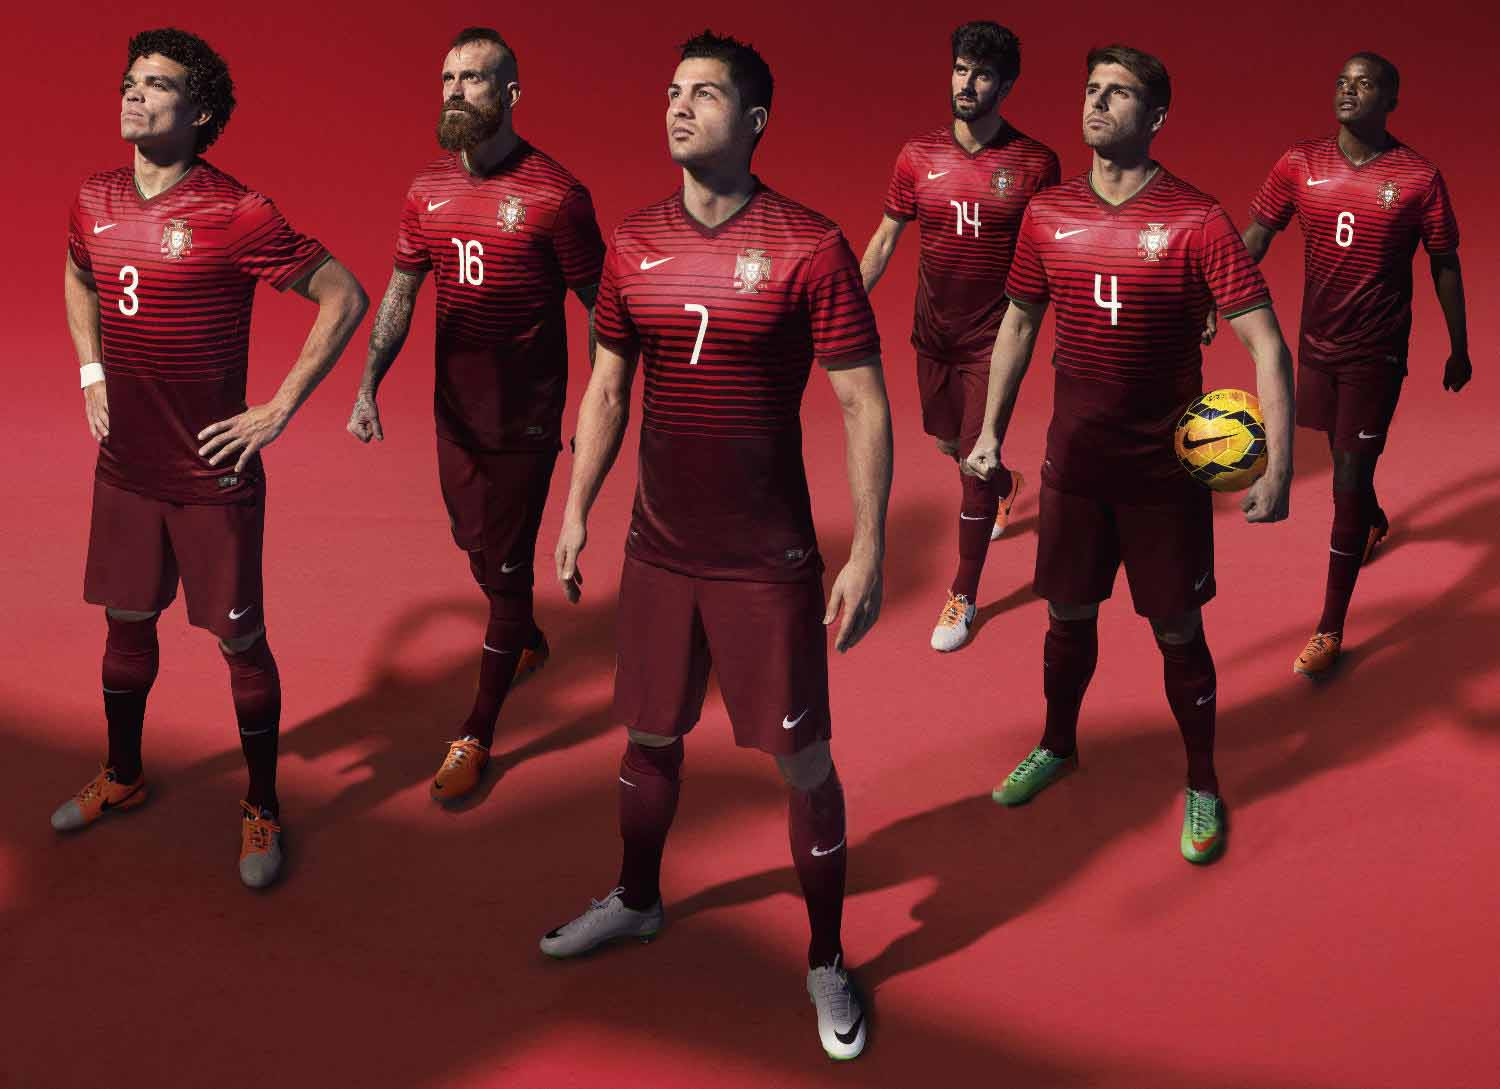 Áo thi đấu Mỹ World Cup đã được thiết kế theo phong cách hiện đại và thể thao. Hãy tham khảo hình ảnh liên quan để cập nhật thông tin mới nhất về bộ đồng phục này.